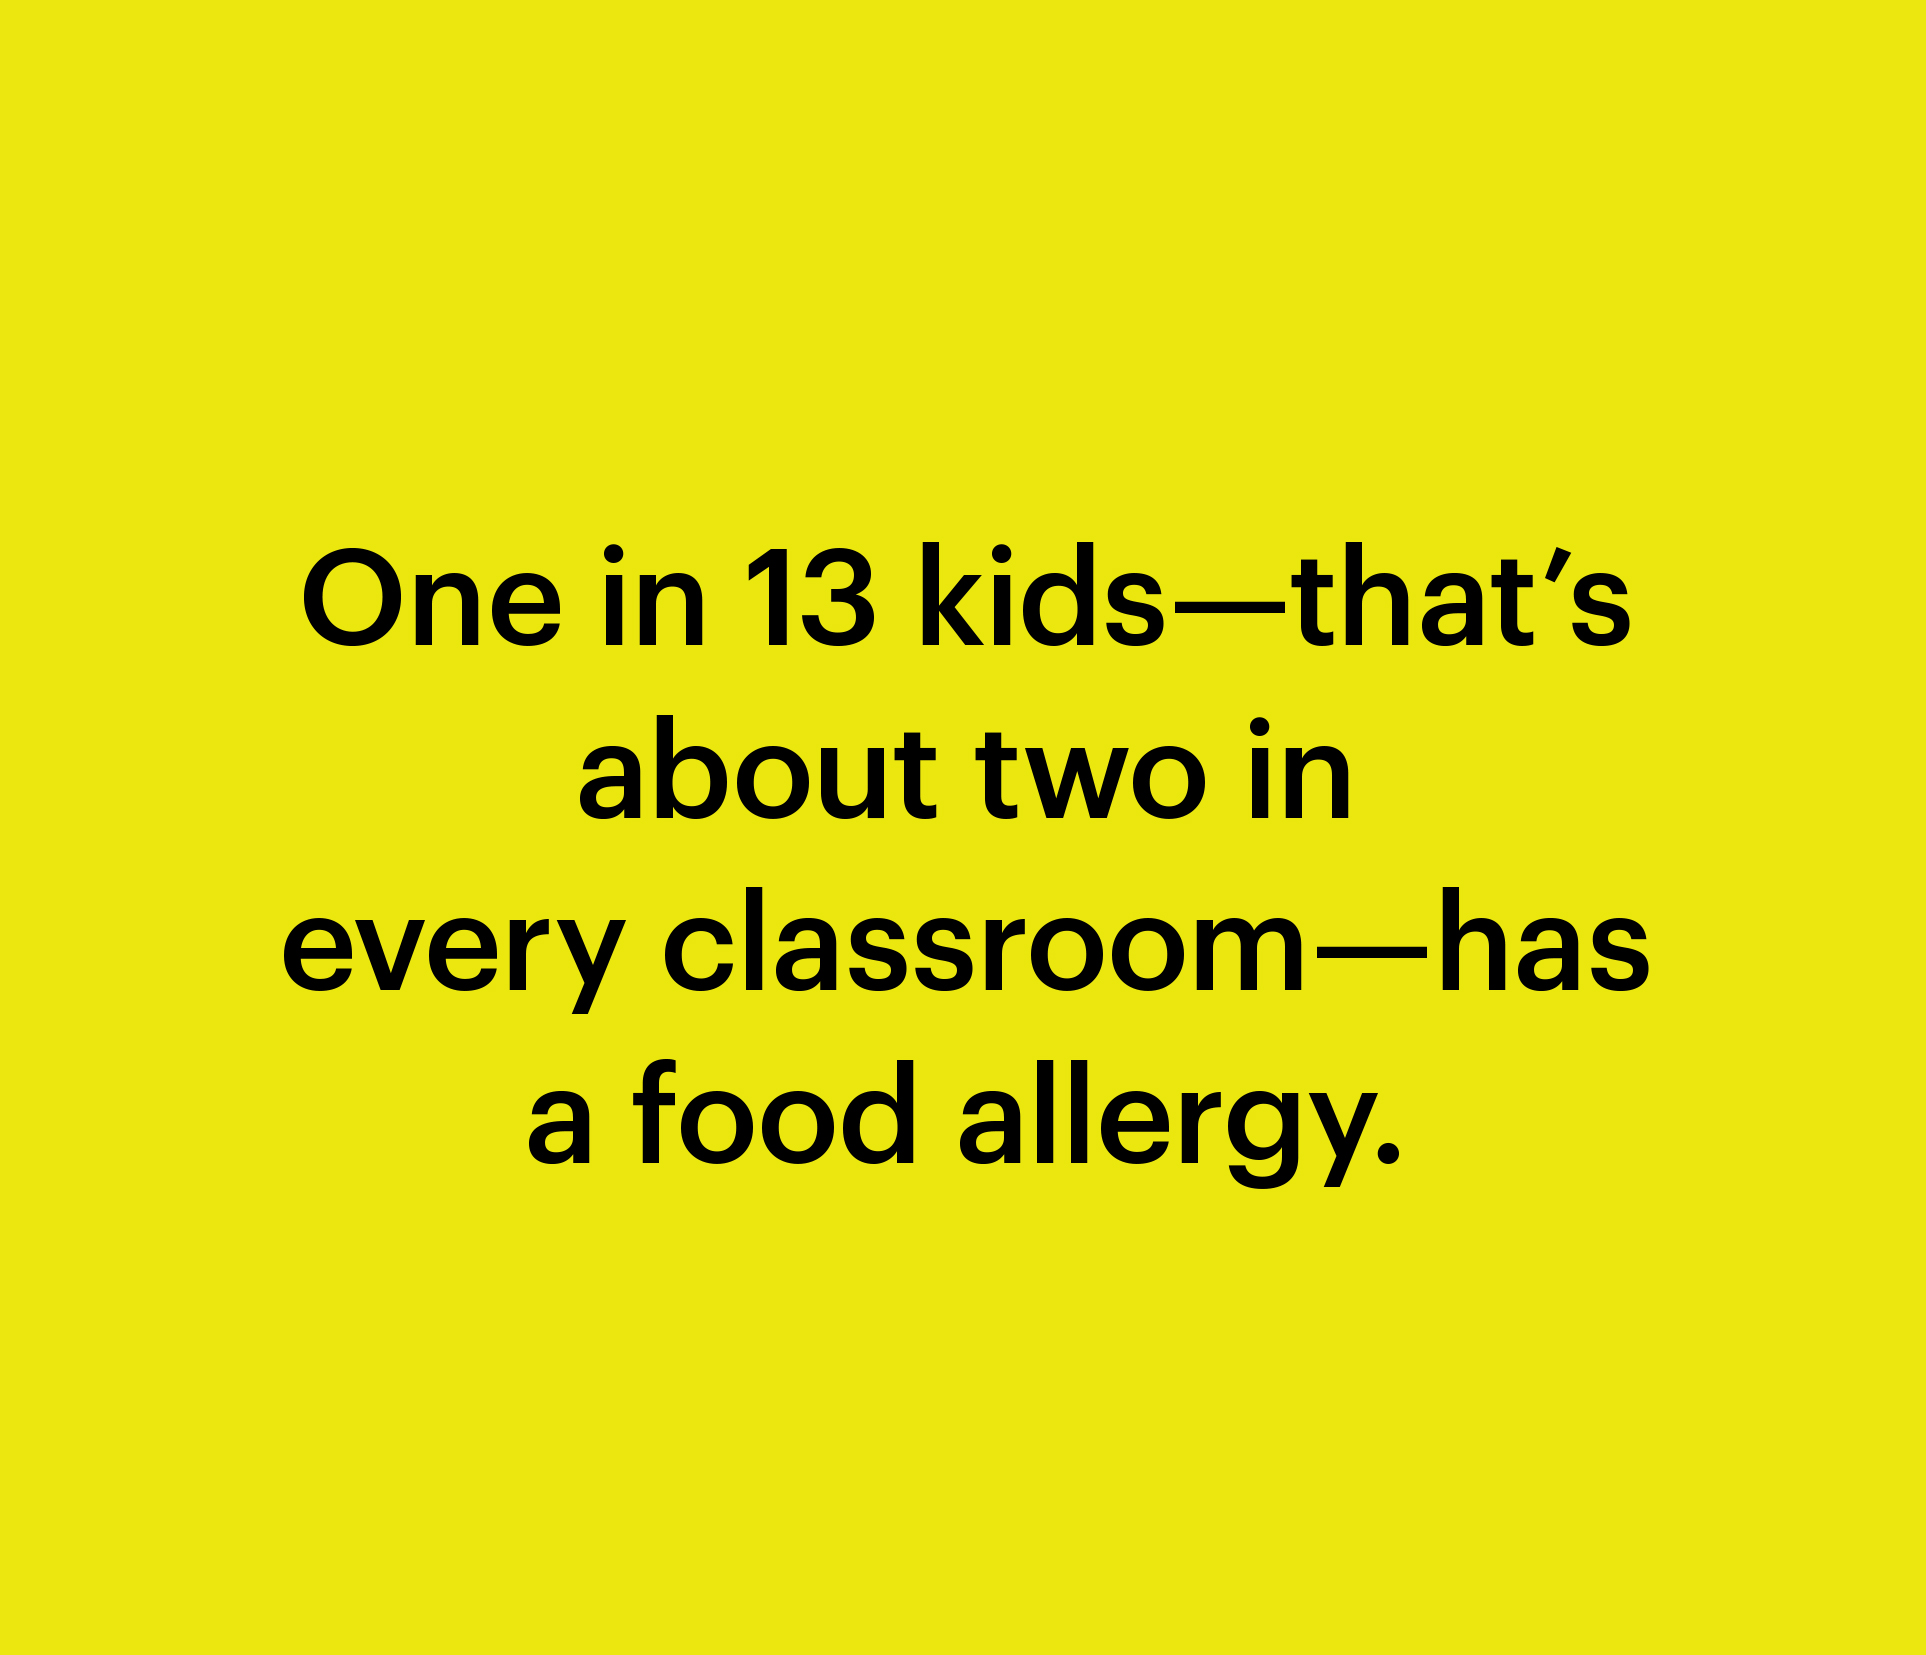 Cómo la pandemia hizo que la gente fuera más comprensiva con las alergias alimentarias de mi hijo